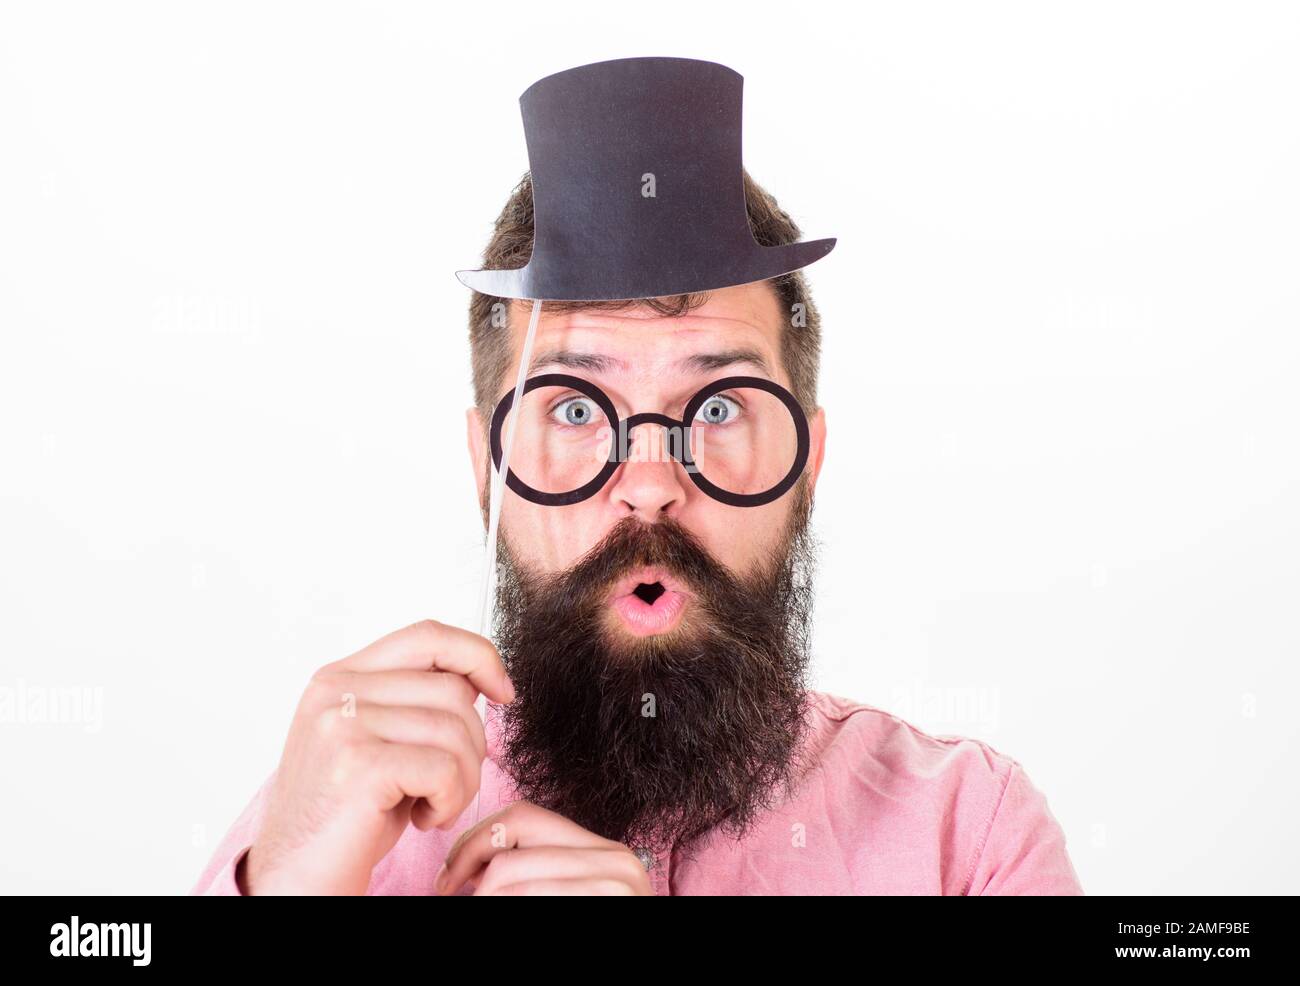 Les hipster barbu hommes contiennent un chapeau en carton et des lunettes  pour un look blanc plus intelligent. Signe quelqu'un est plus intelligent  que vous. Des astuces qui semblent plus intelligentes que